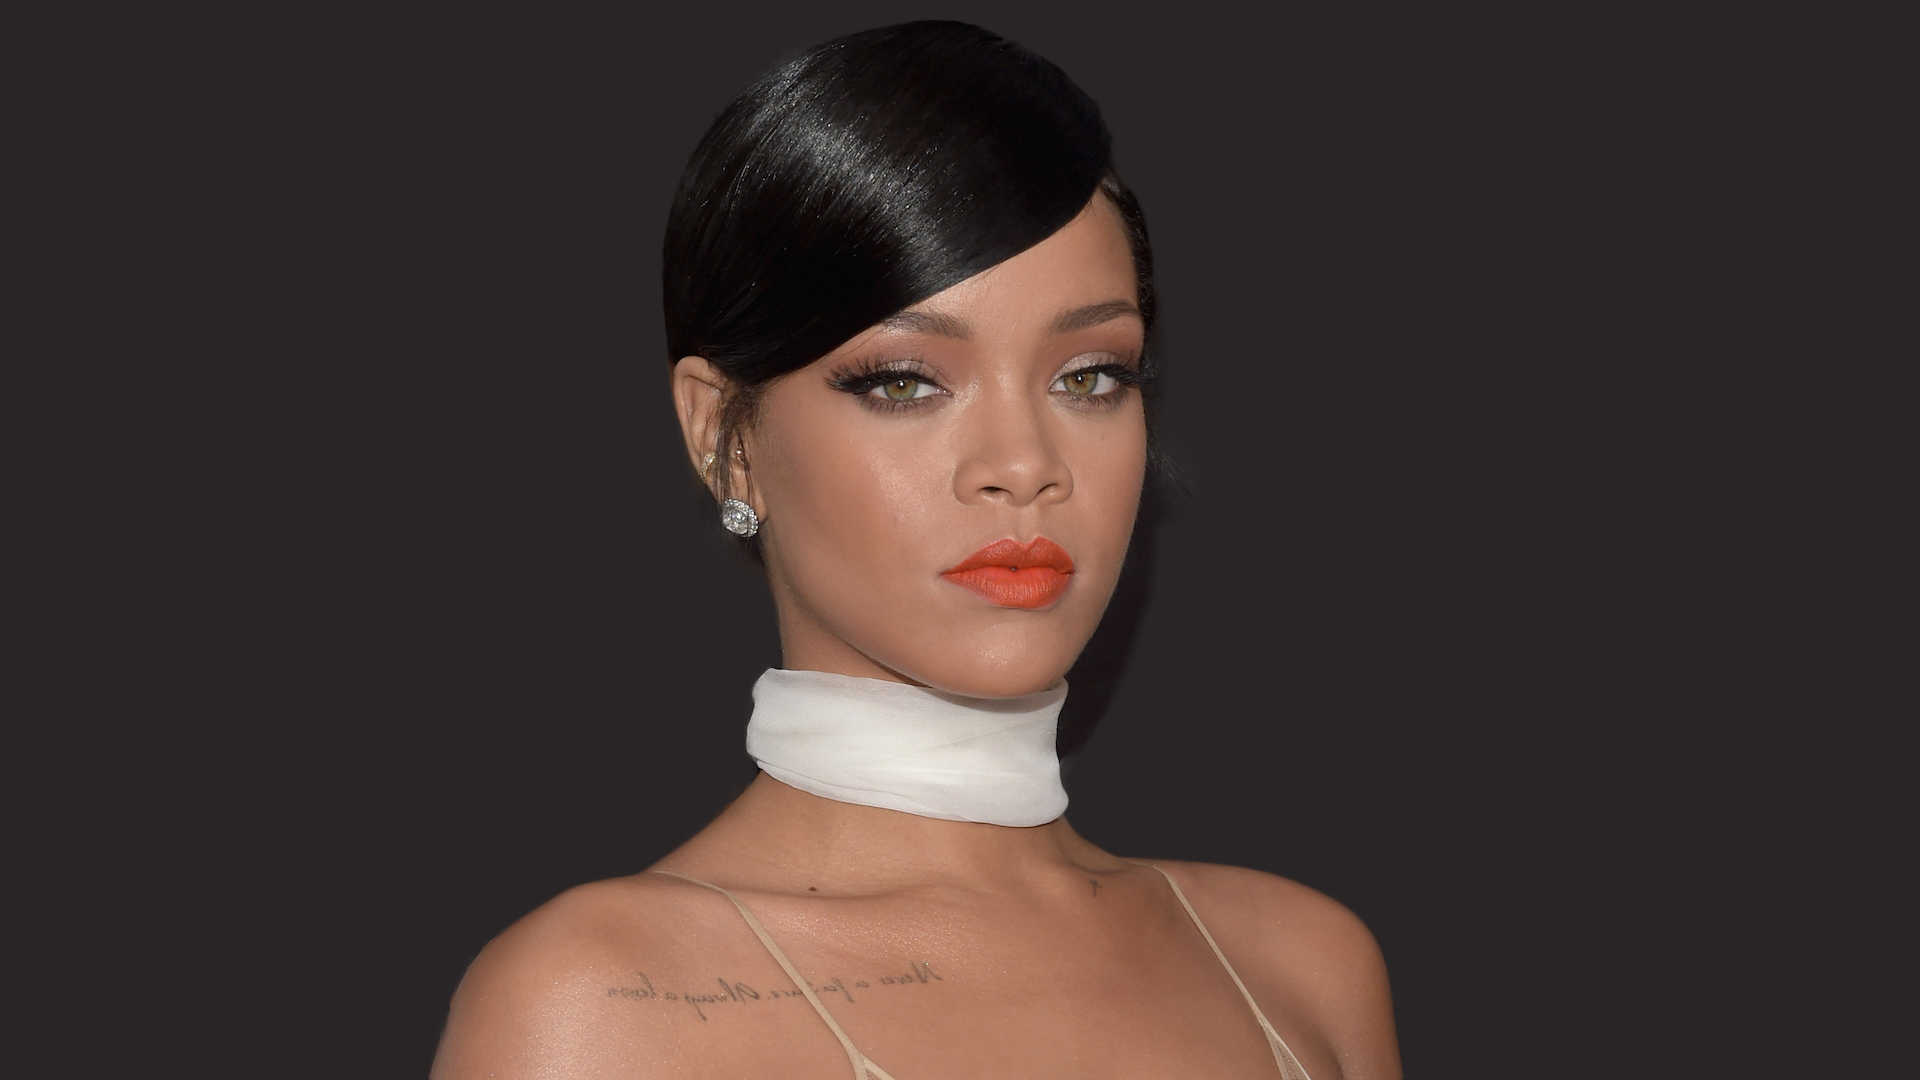 Wallpaper Rihanna HD 1080p Upload At November By